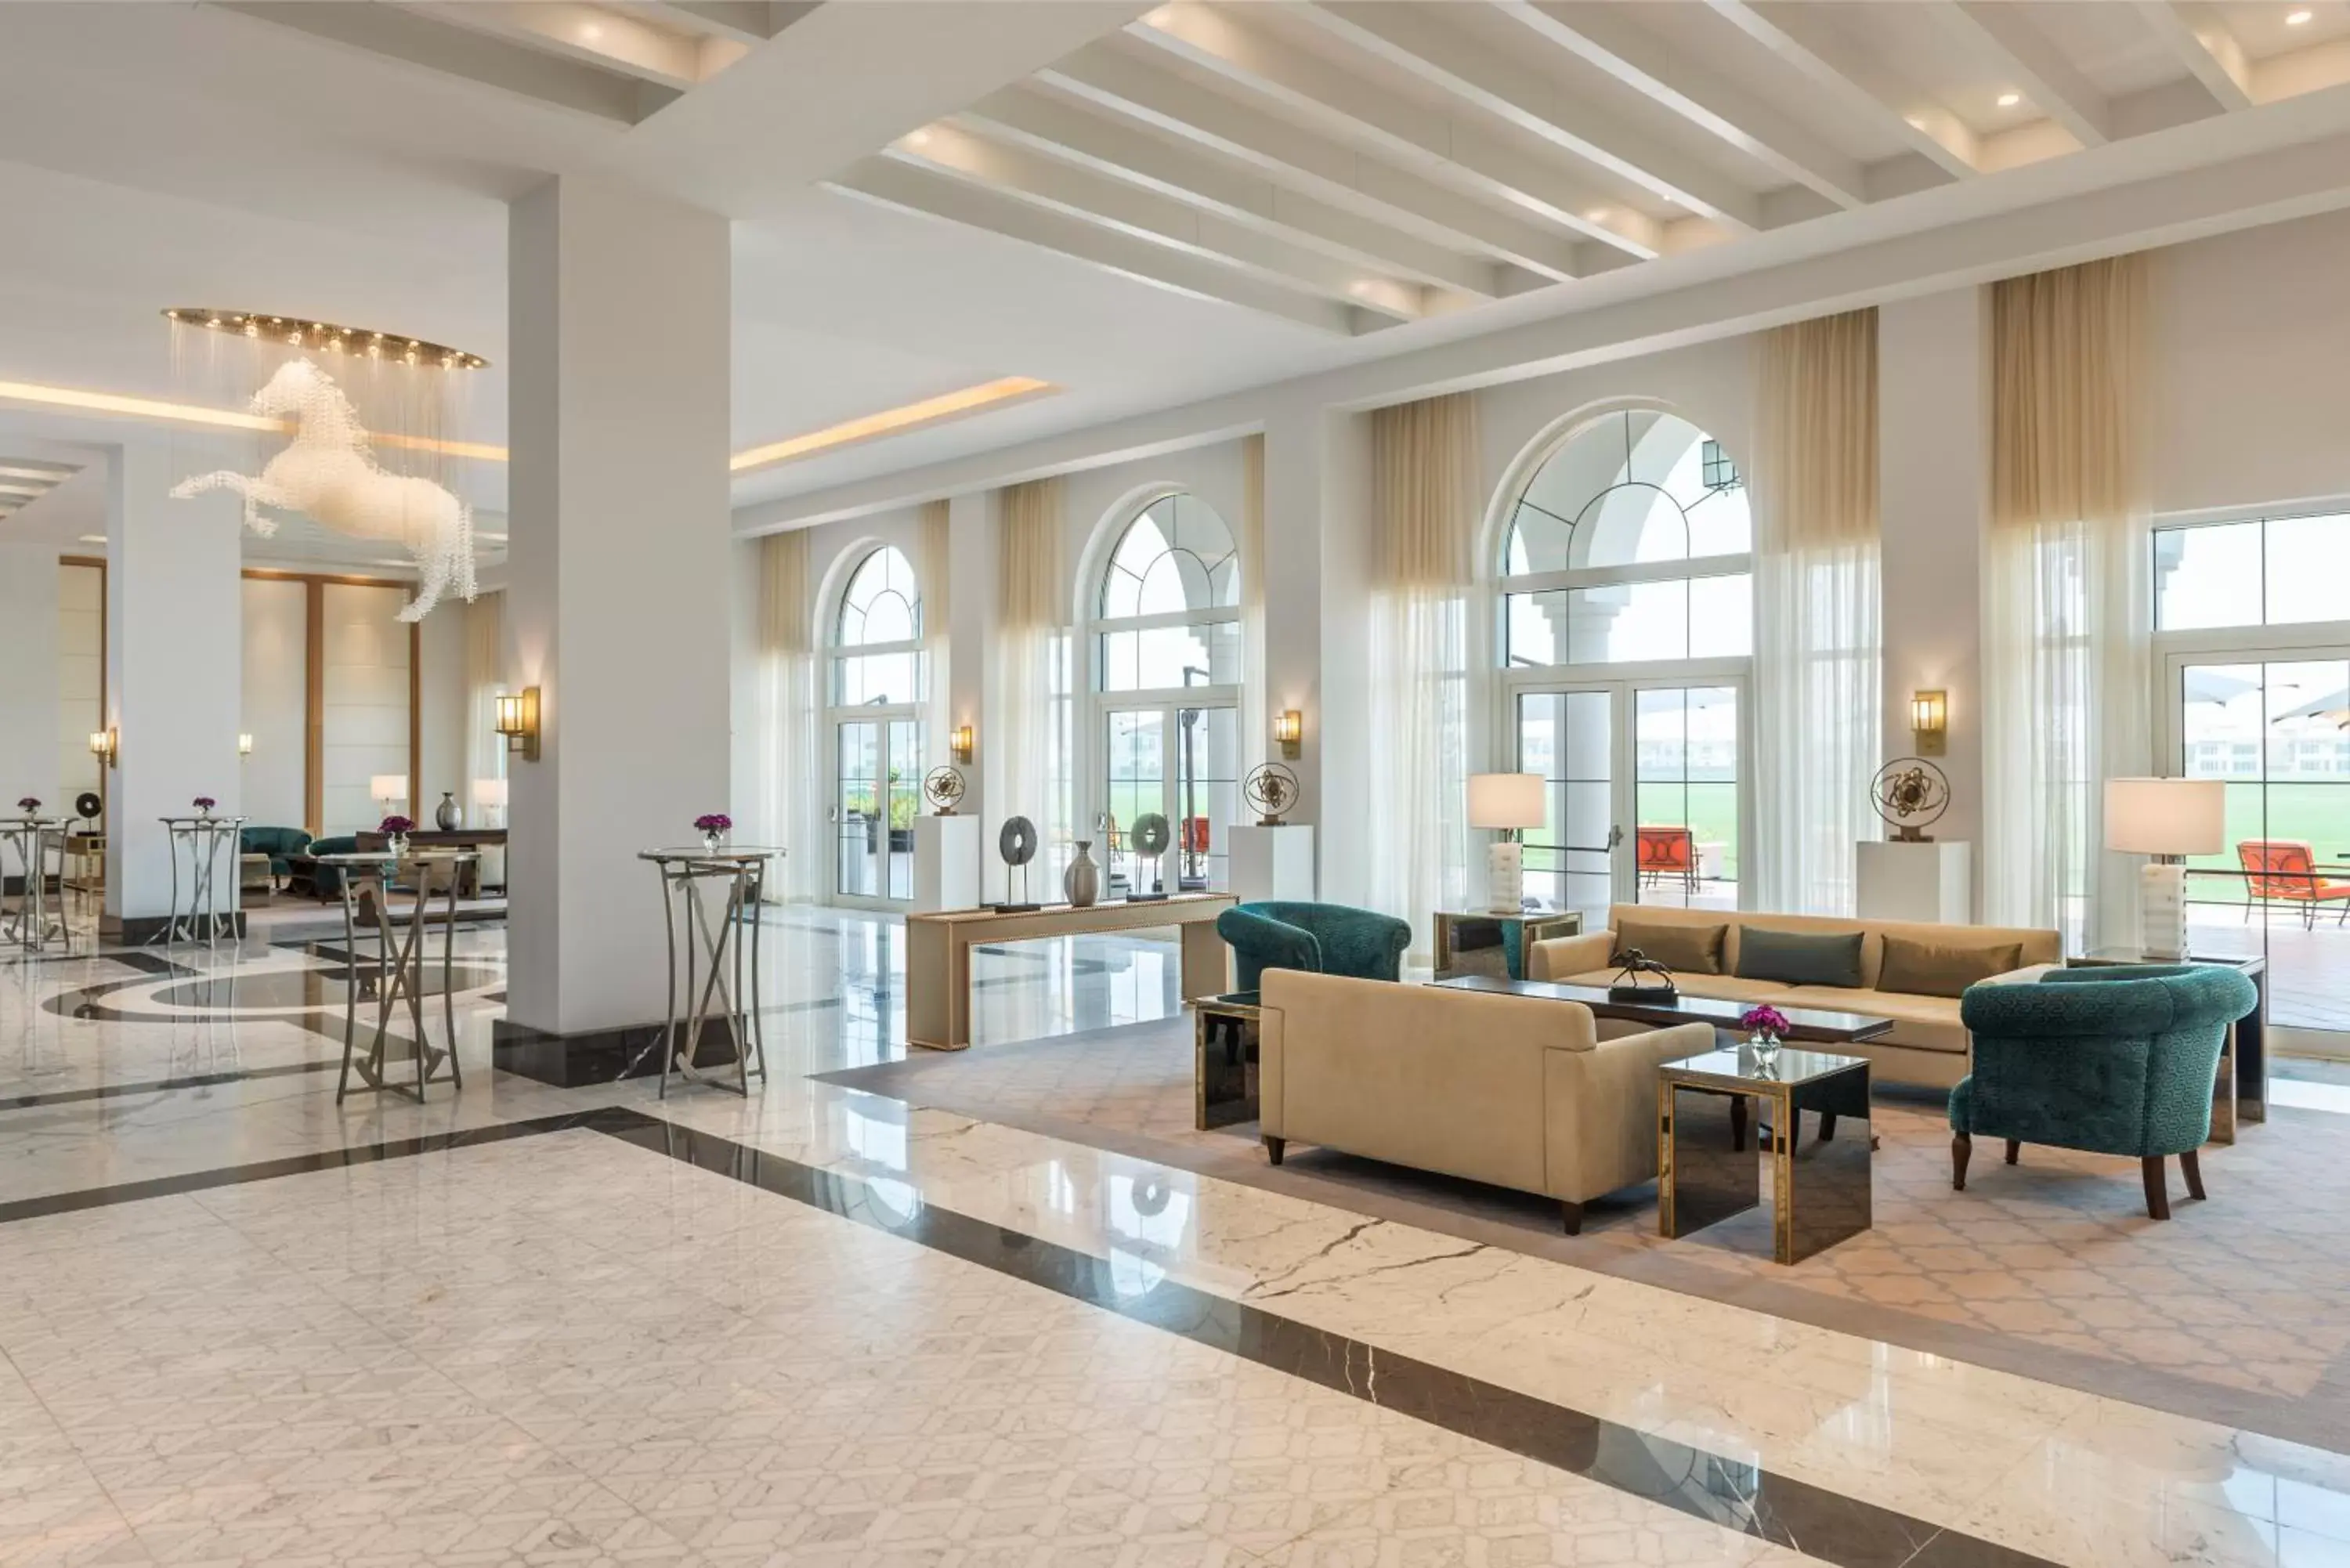 Lobby or reception in Al Habtoor Polo Resort